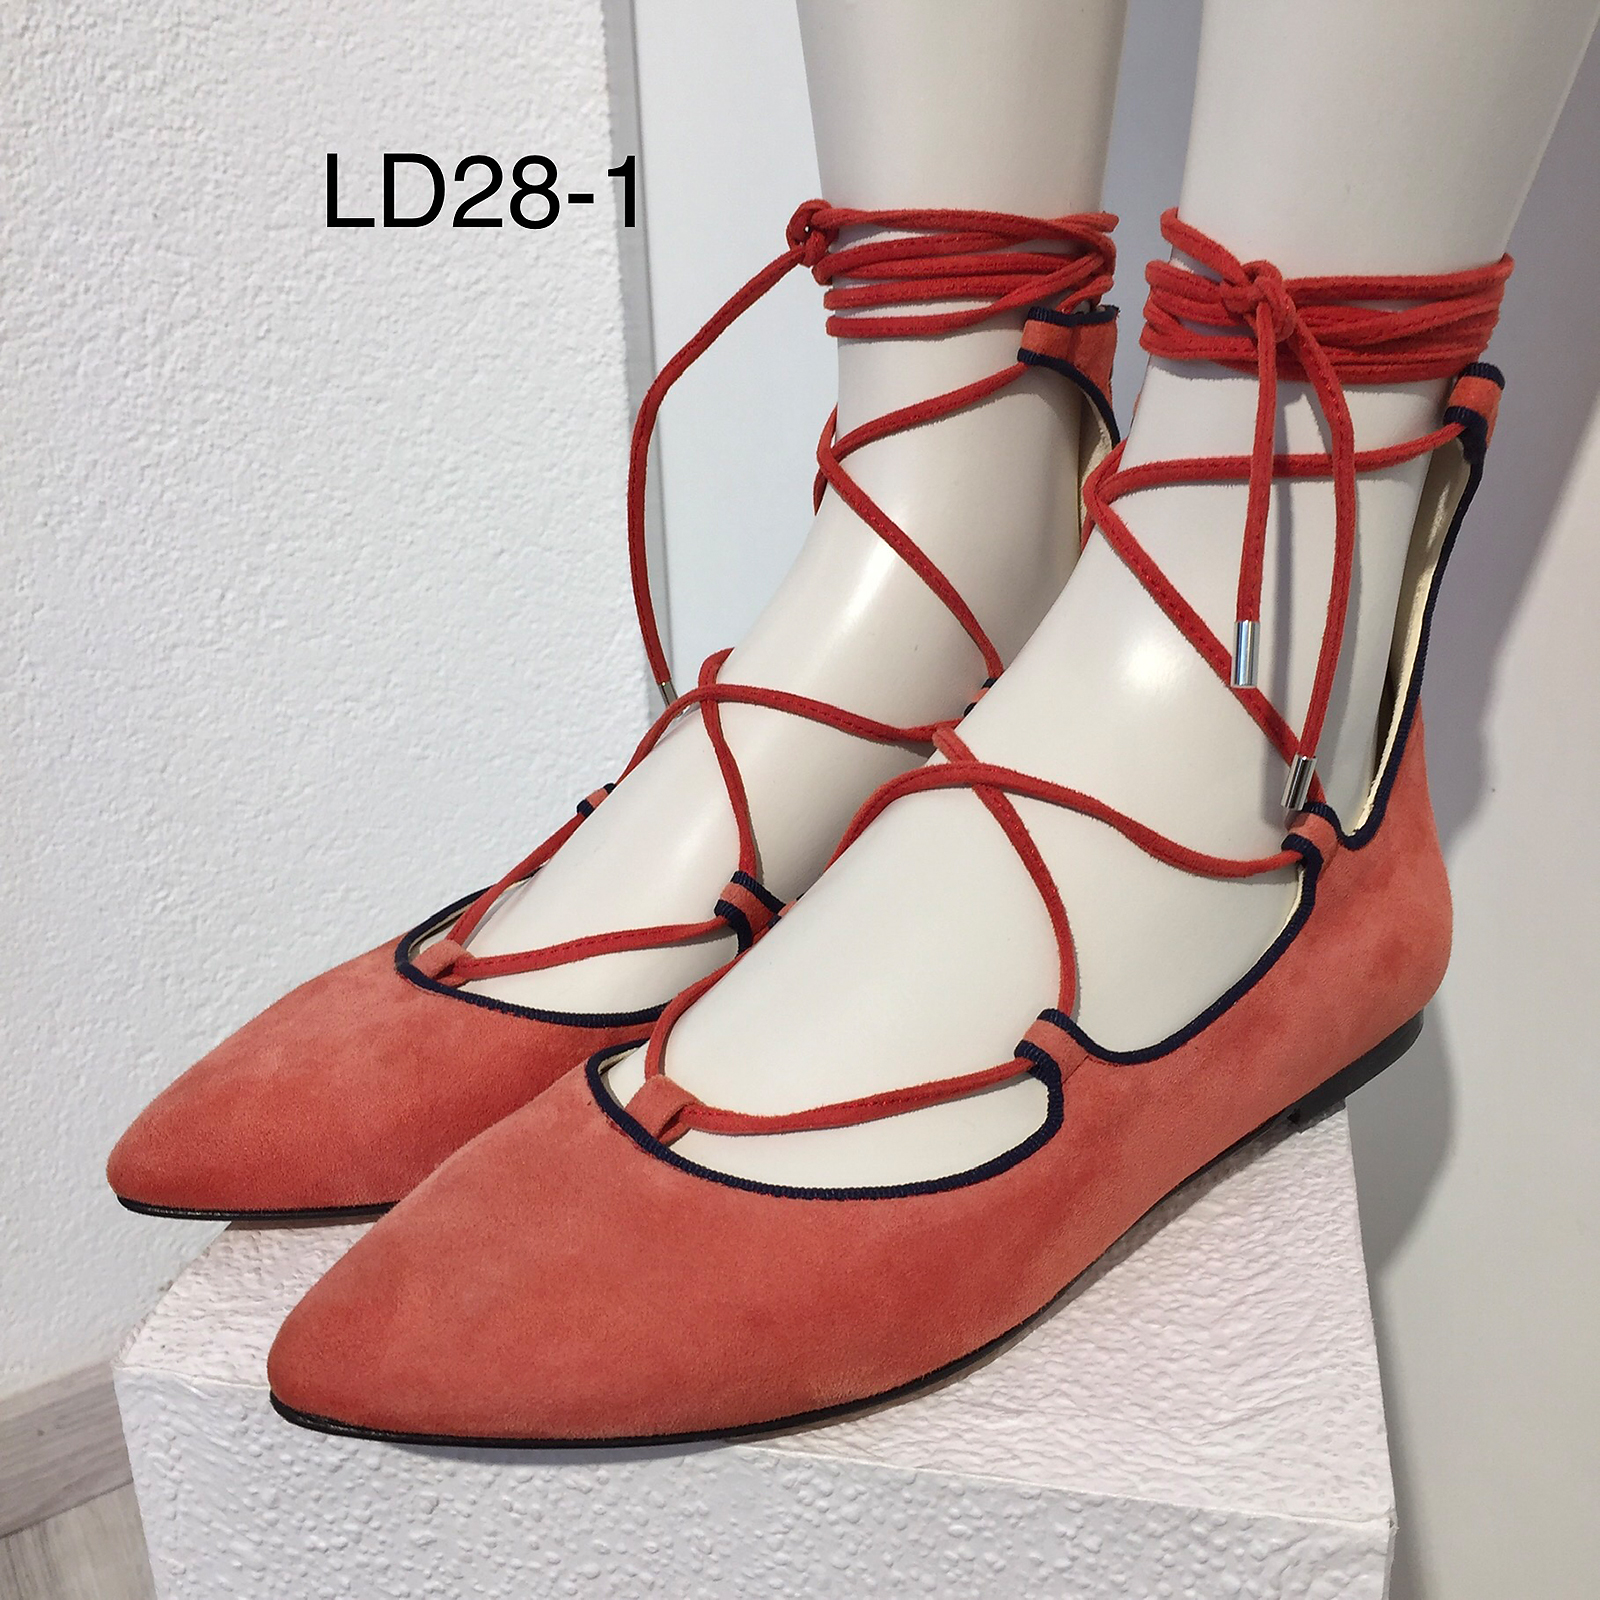 Look - Damen 28-1 | Schuhe